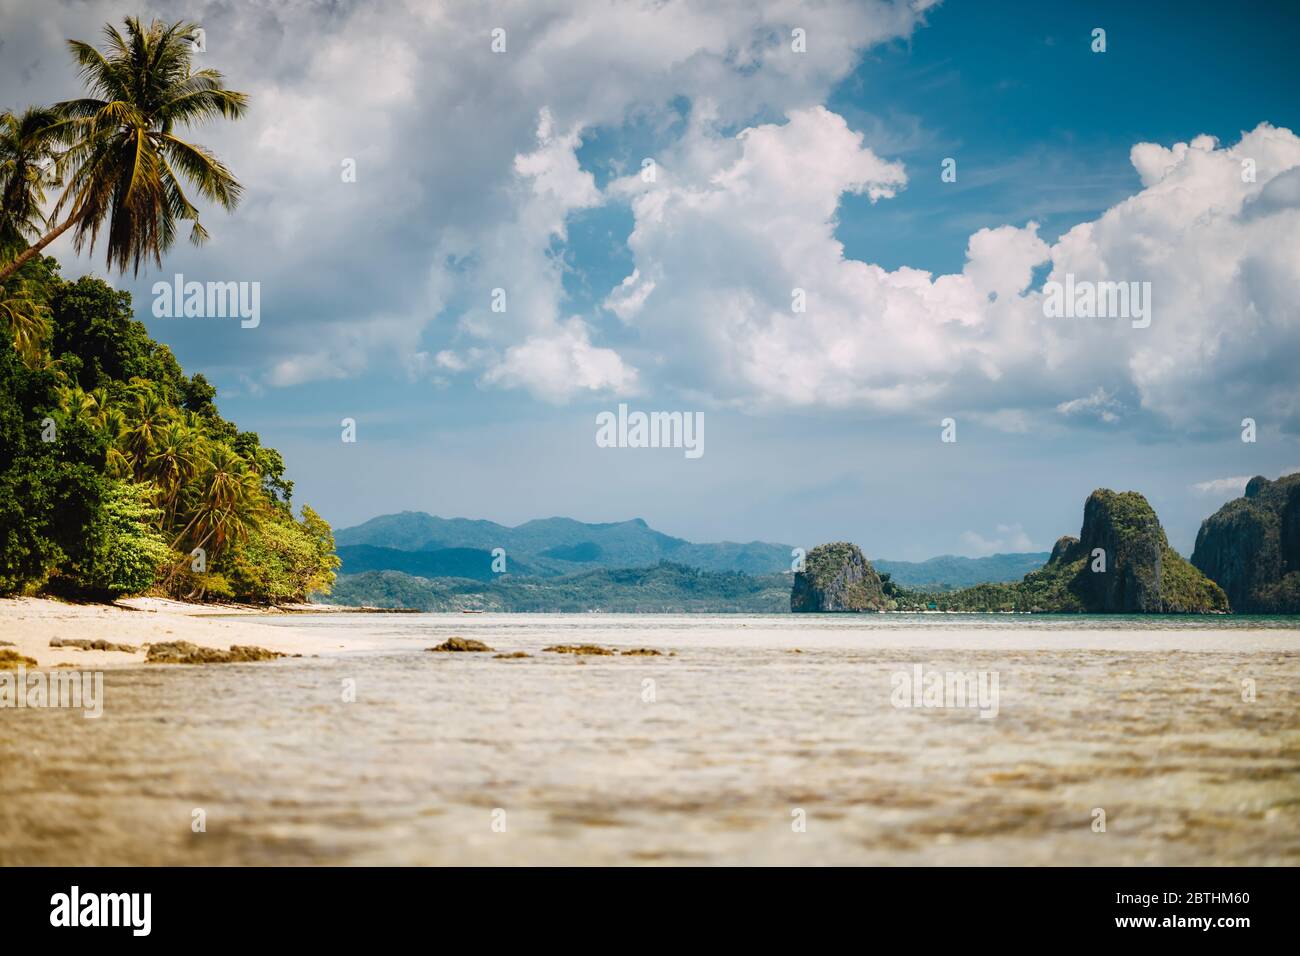 El Nido, Palawan, Philippinen. Landschaftlich schöne tropische Landschaft mit seichter Lagune, Sandstrand mit Palmen. Exotische Inseln und weiße Wolkenlandschaft Stockfoto